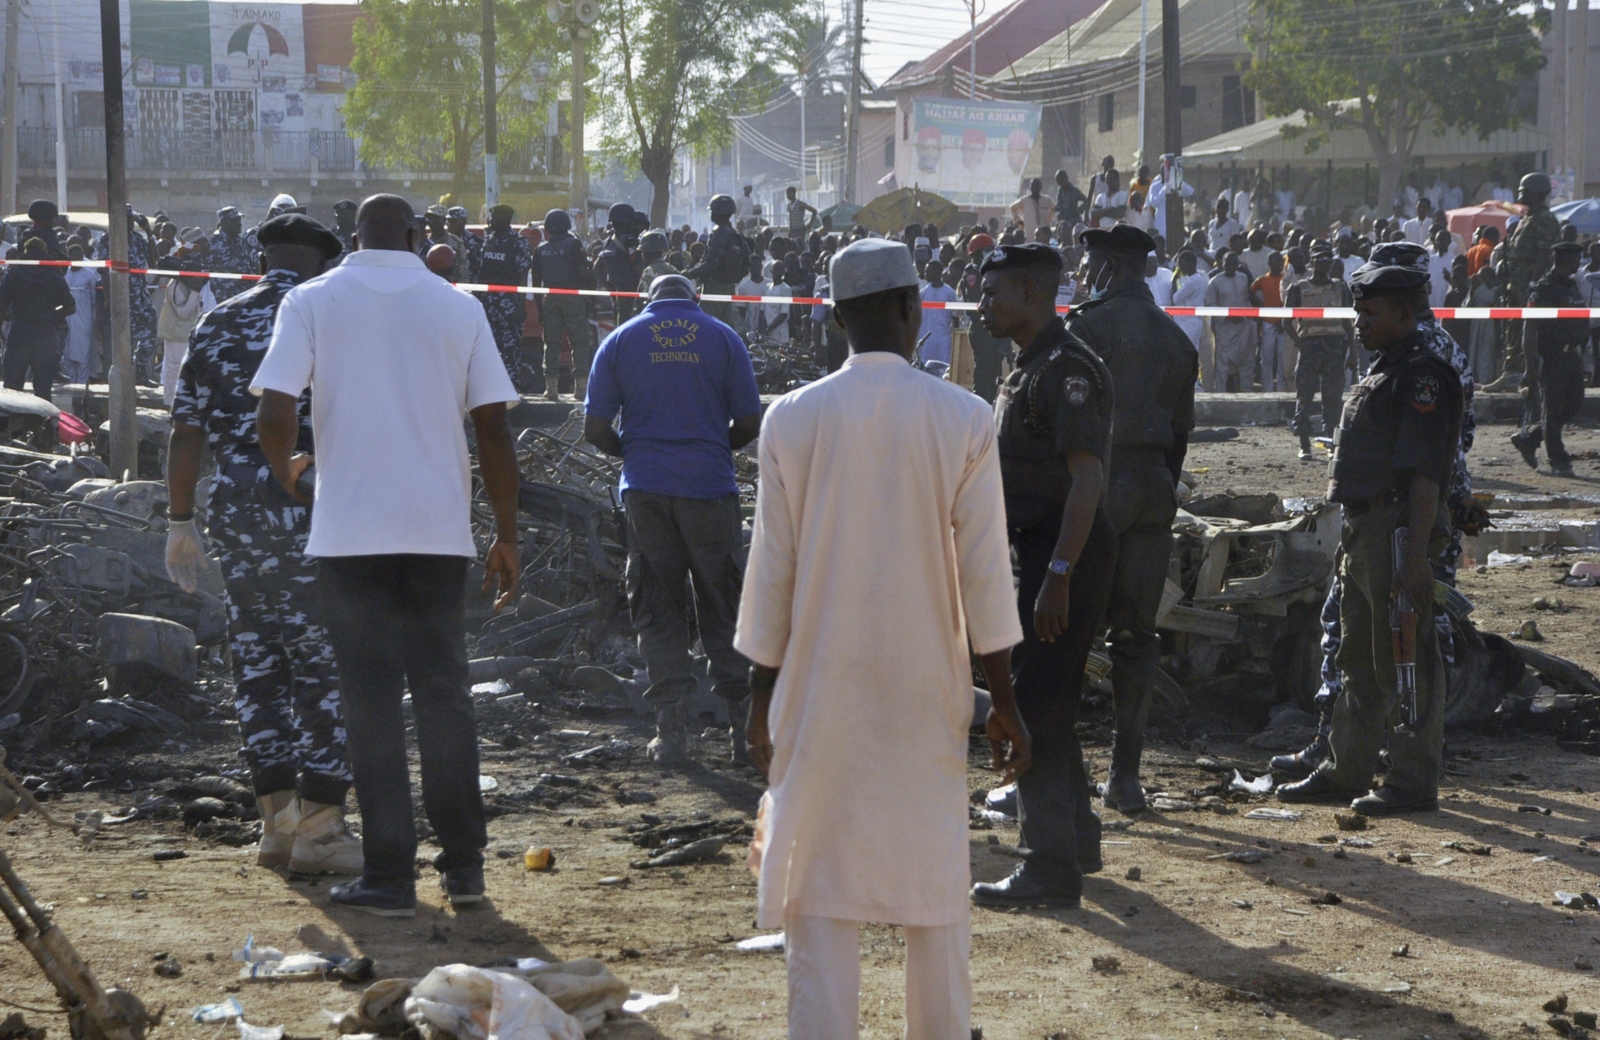 Εκατόμβη νεκρών από επίθεση σε τέμενος στη Νιγηρία – 50 νεκροί